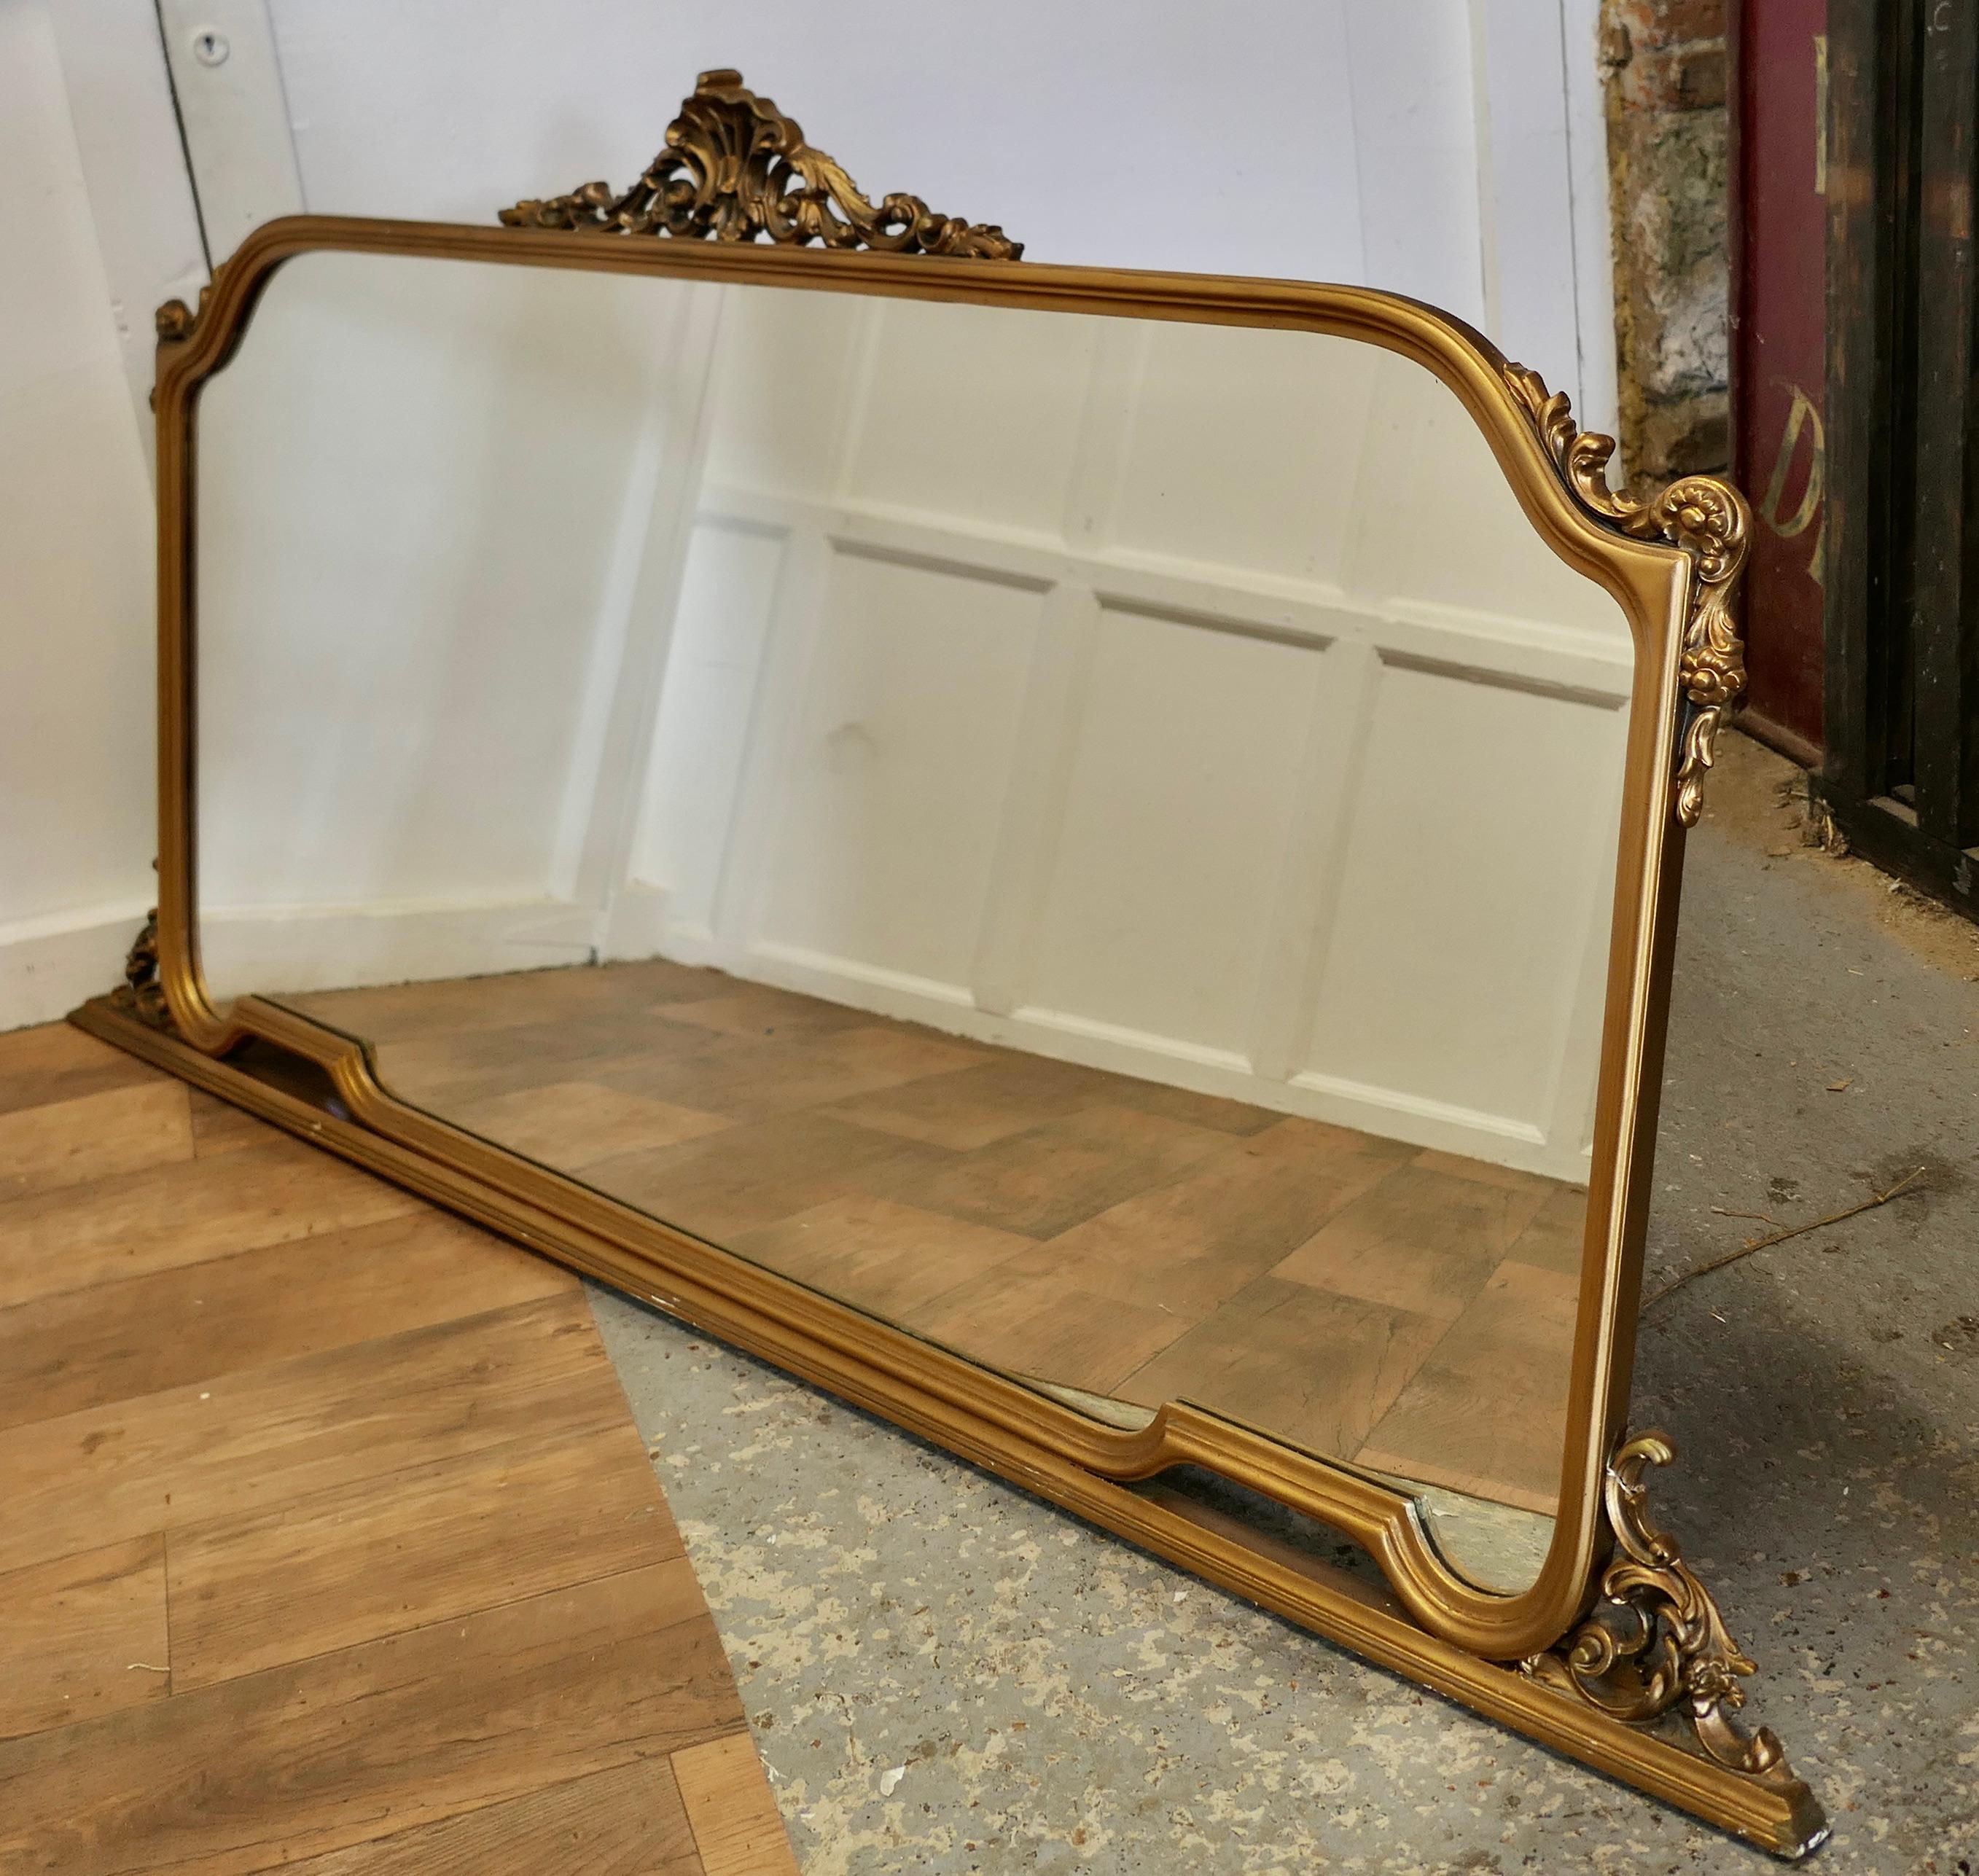 Ein großer vergoldeter Mantelspiegel  

Dieser Spiegel hat eine schöne Goldrahmen ist es mit Swags auf der Oberseite und um die Kanten verziert
 Der große Rahmen ist in gutem Zustand, auch der Spiegel ist in ausgezeichnetem Zustand.
Dies ist ein